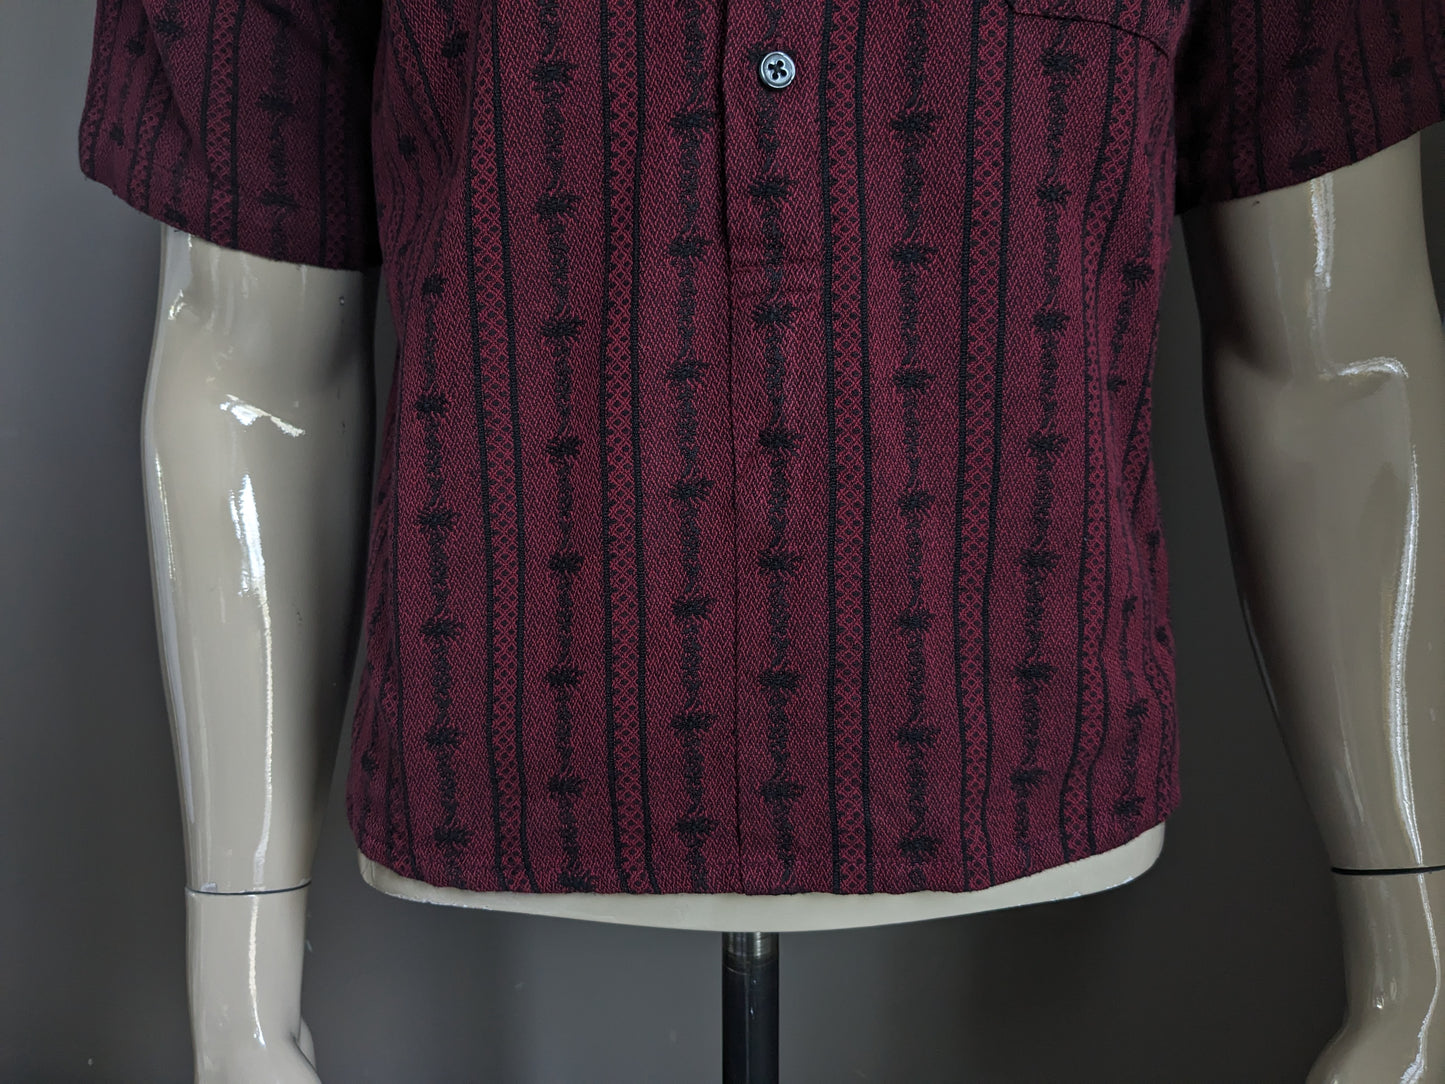 Camisa de atrio vintage con botones y mao / granjeros / cuello vertical. Burdeos de color negro. Tamaño S / M.